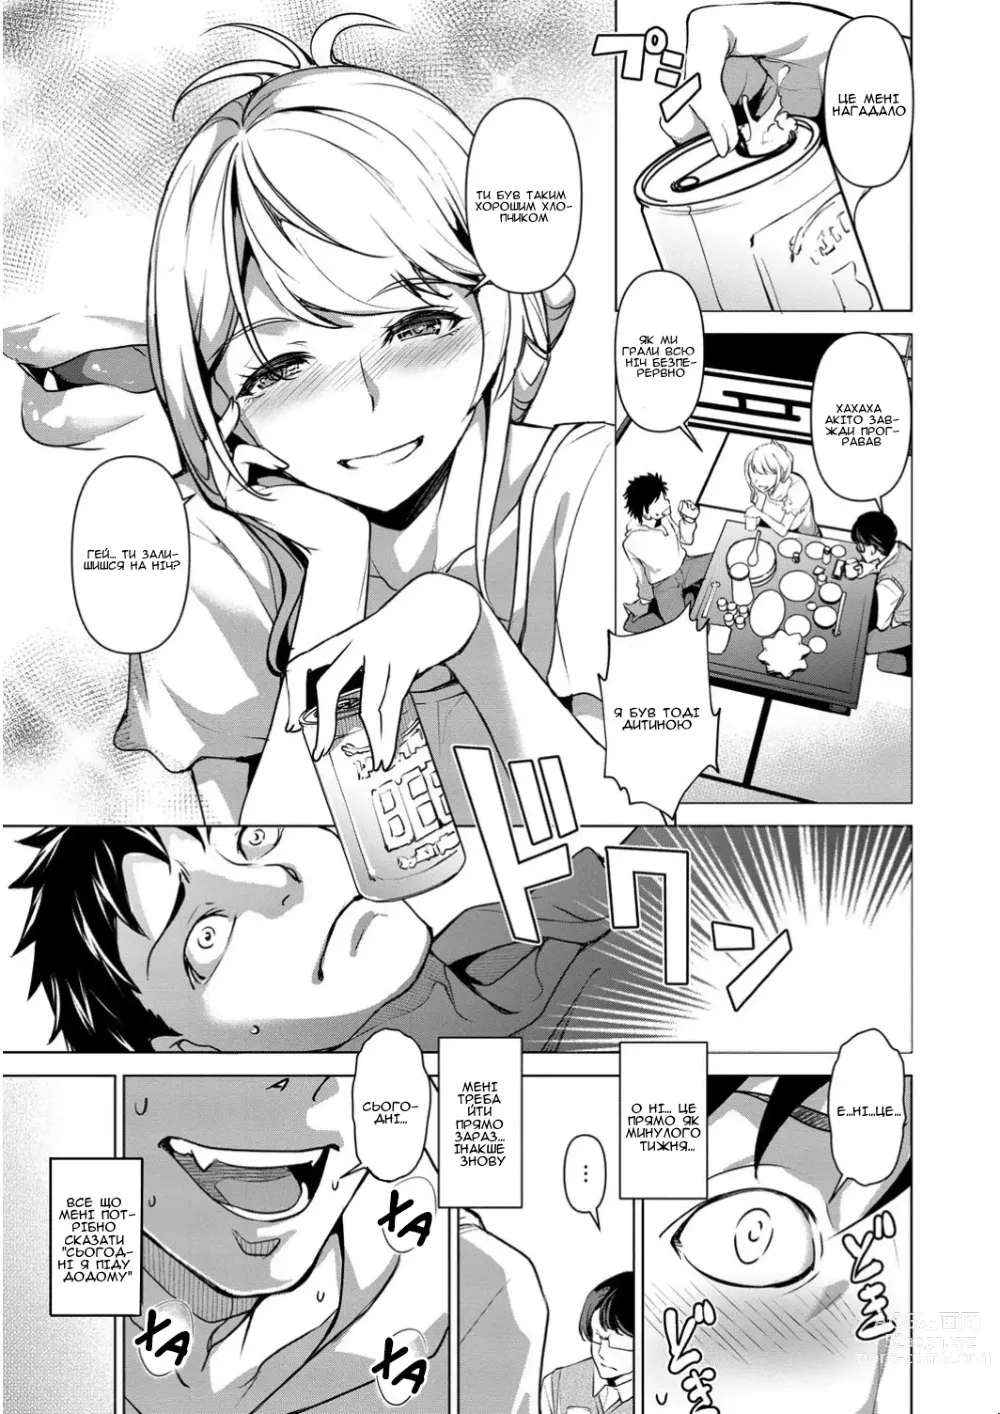 Page 3 of manga Моя невістка має погану алкогольну звичку